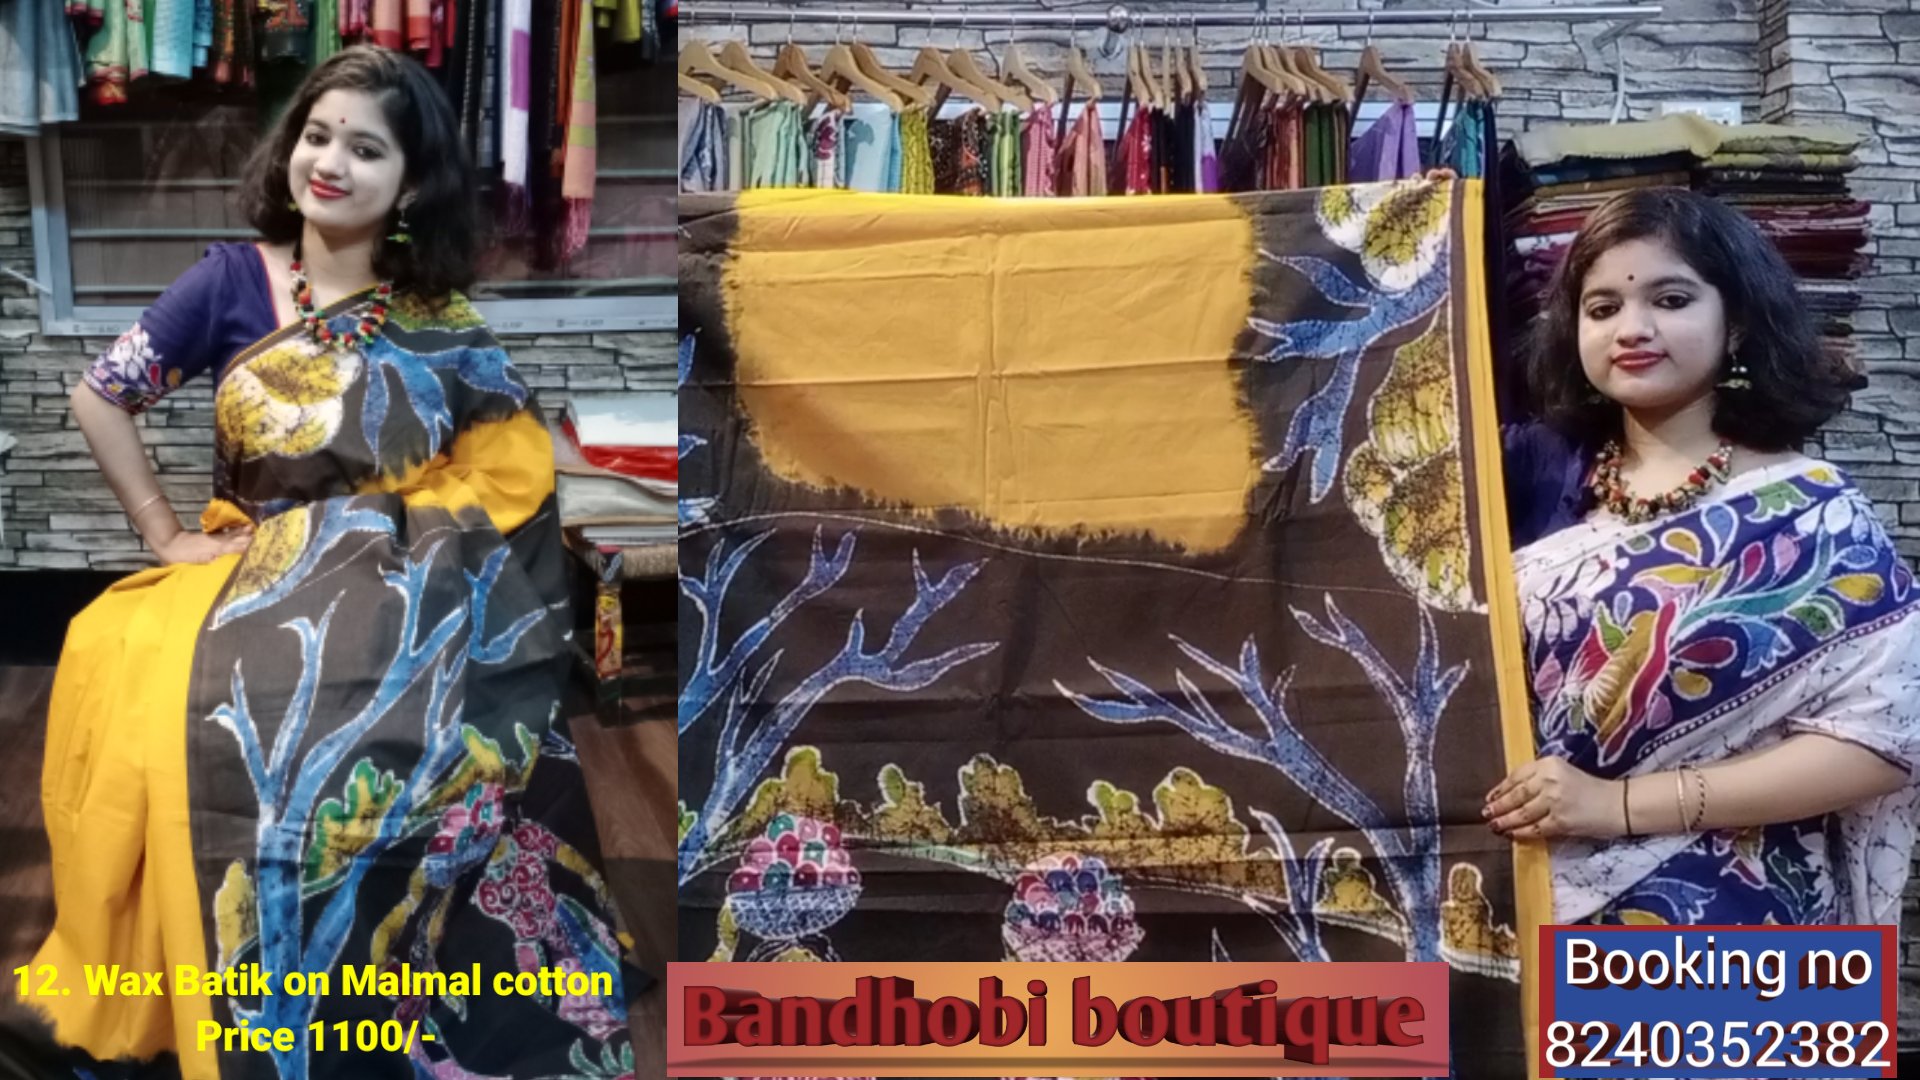 Wax Batik on Malmal cotton